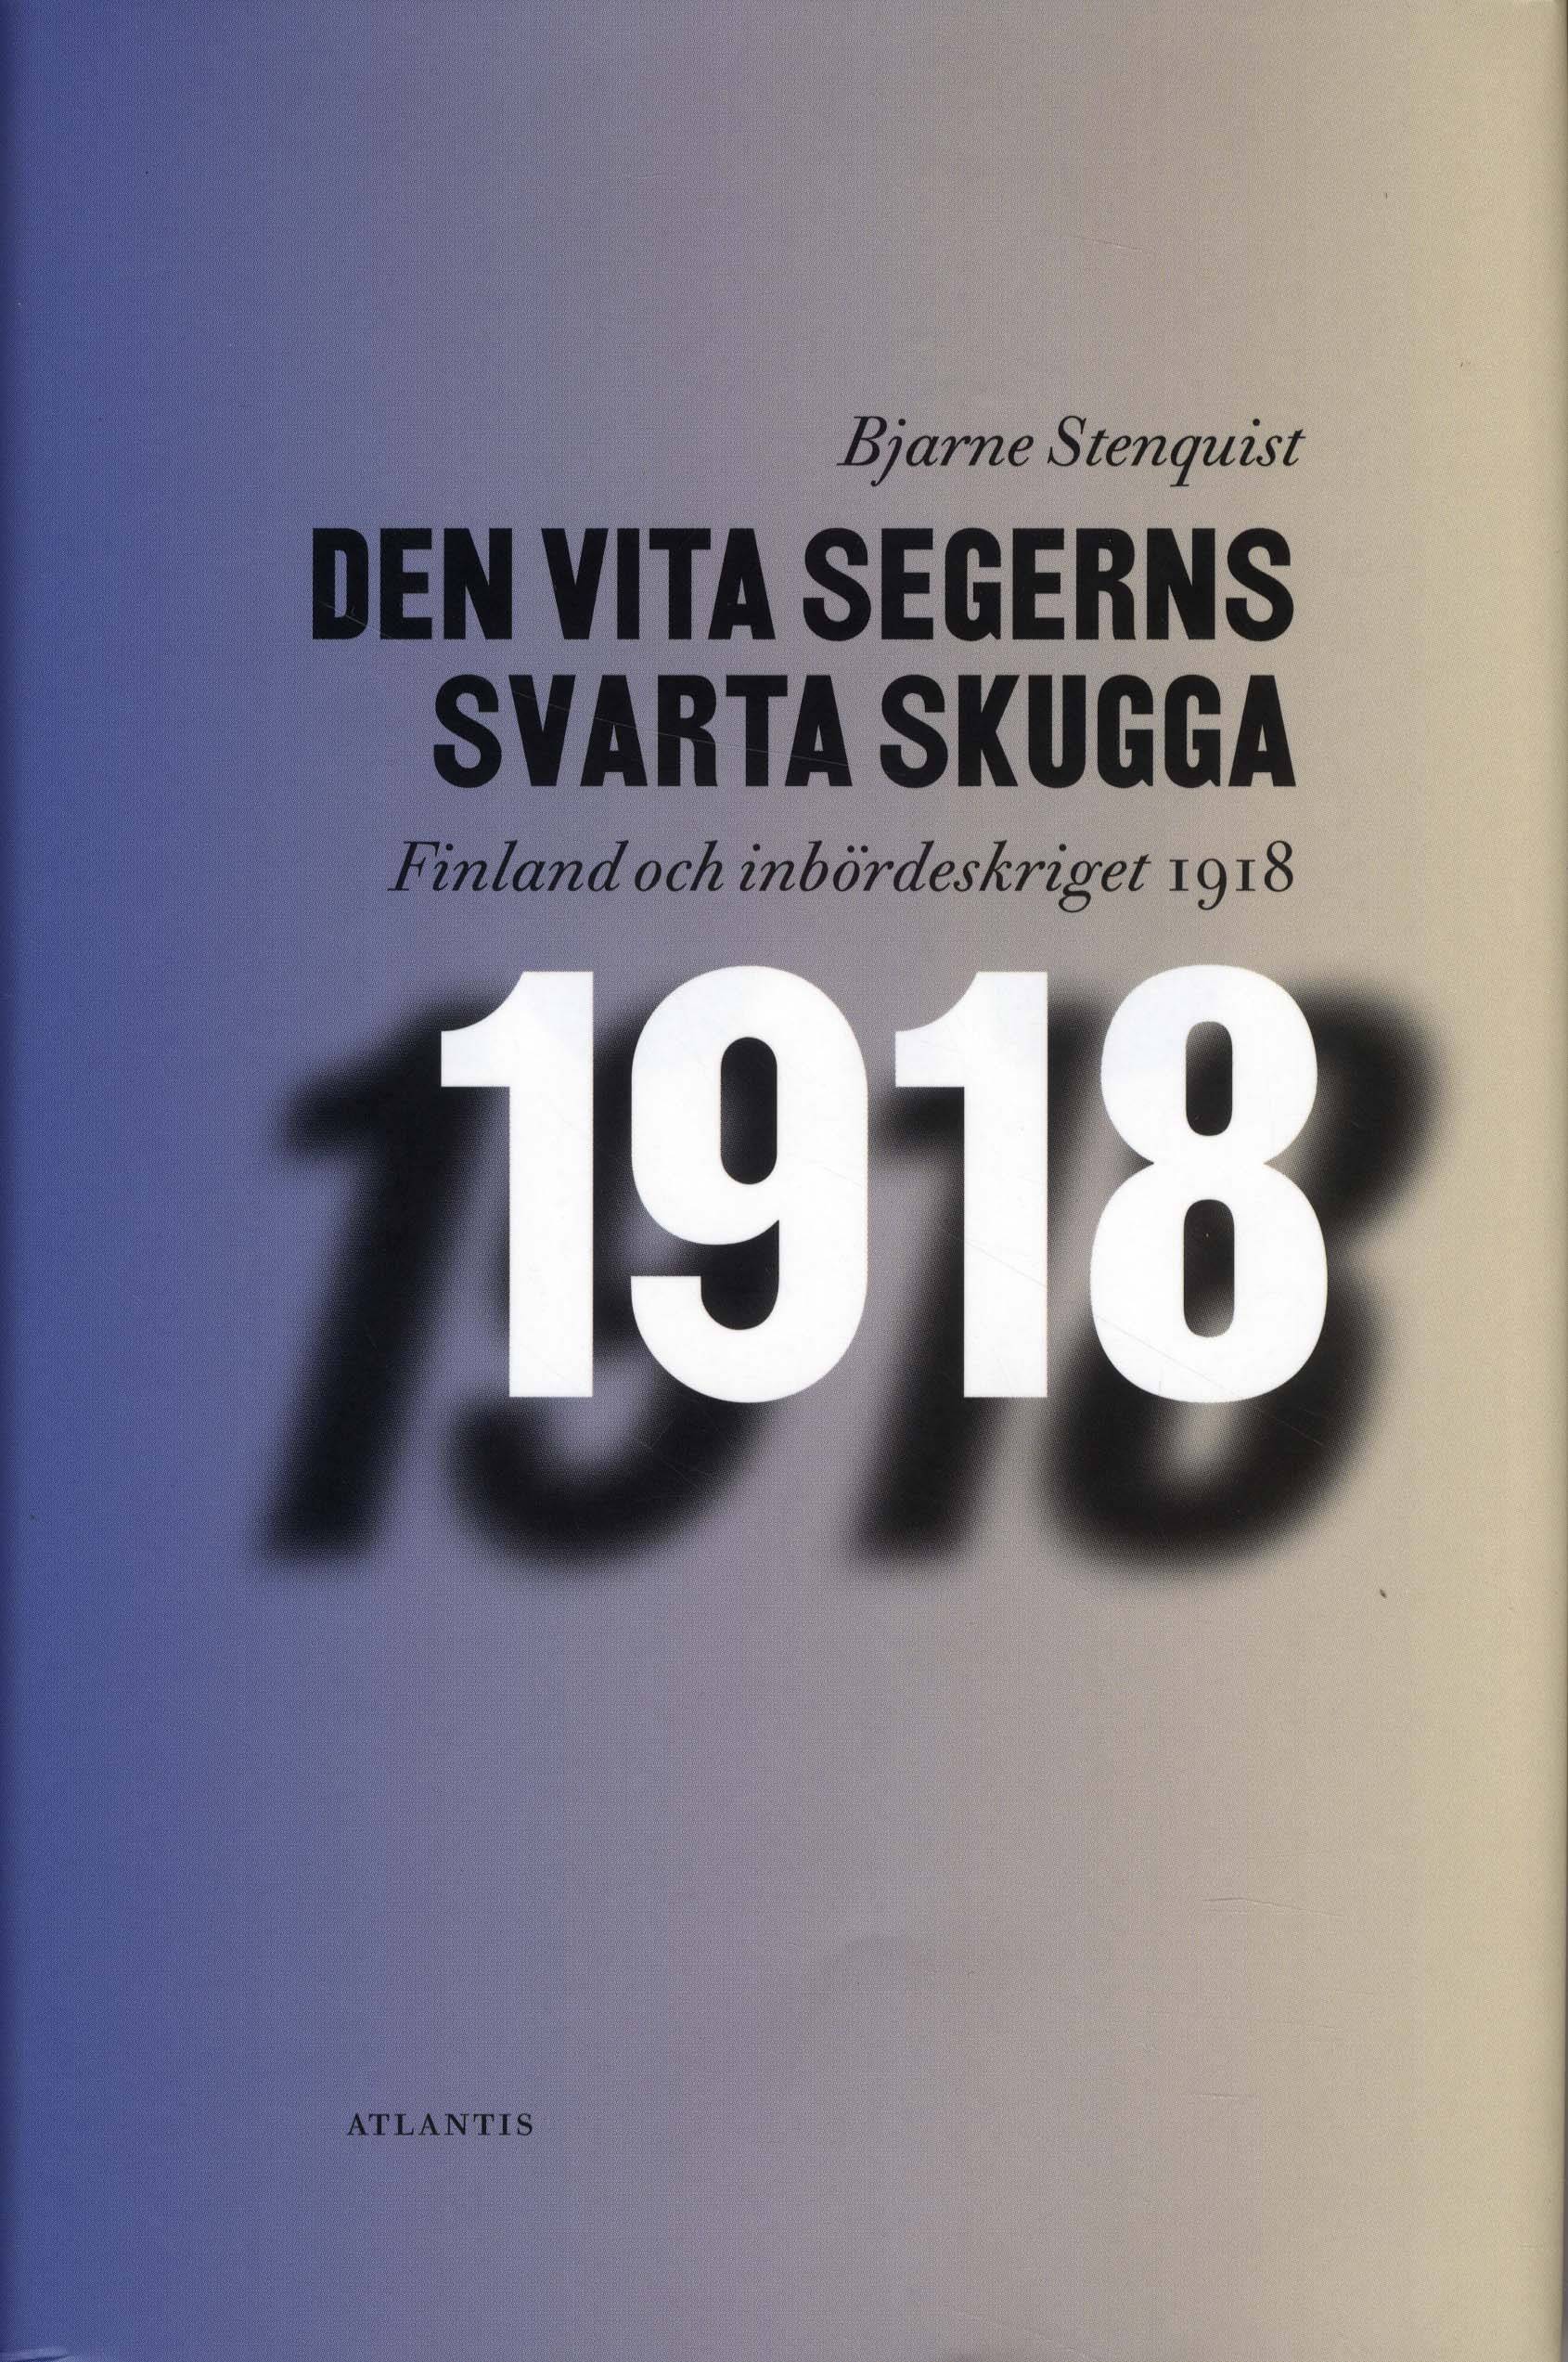 Den vita segerns svarta skugga : Finland och inbördeskriget 1918